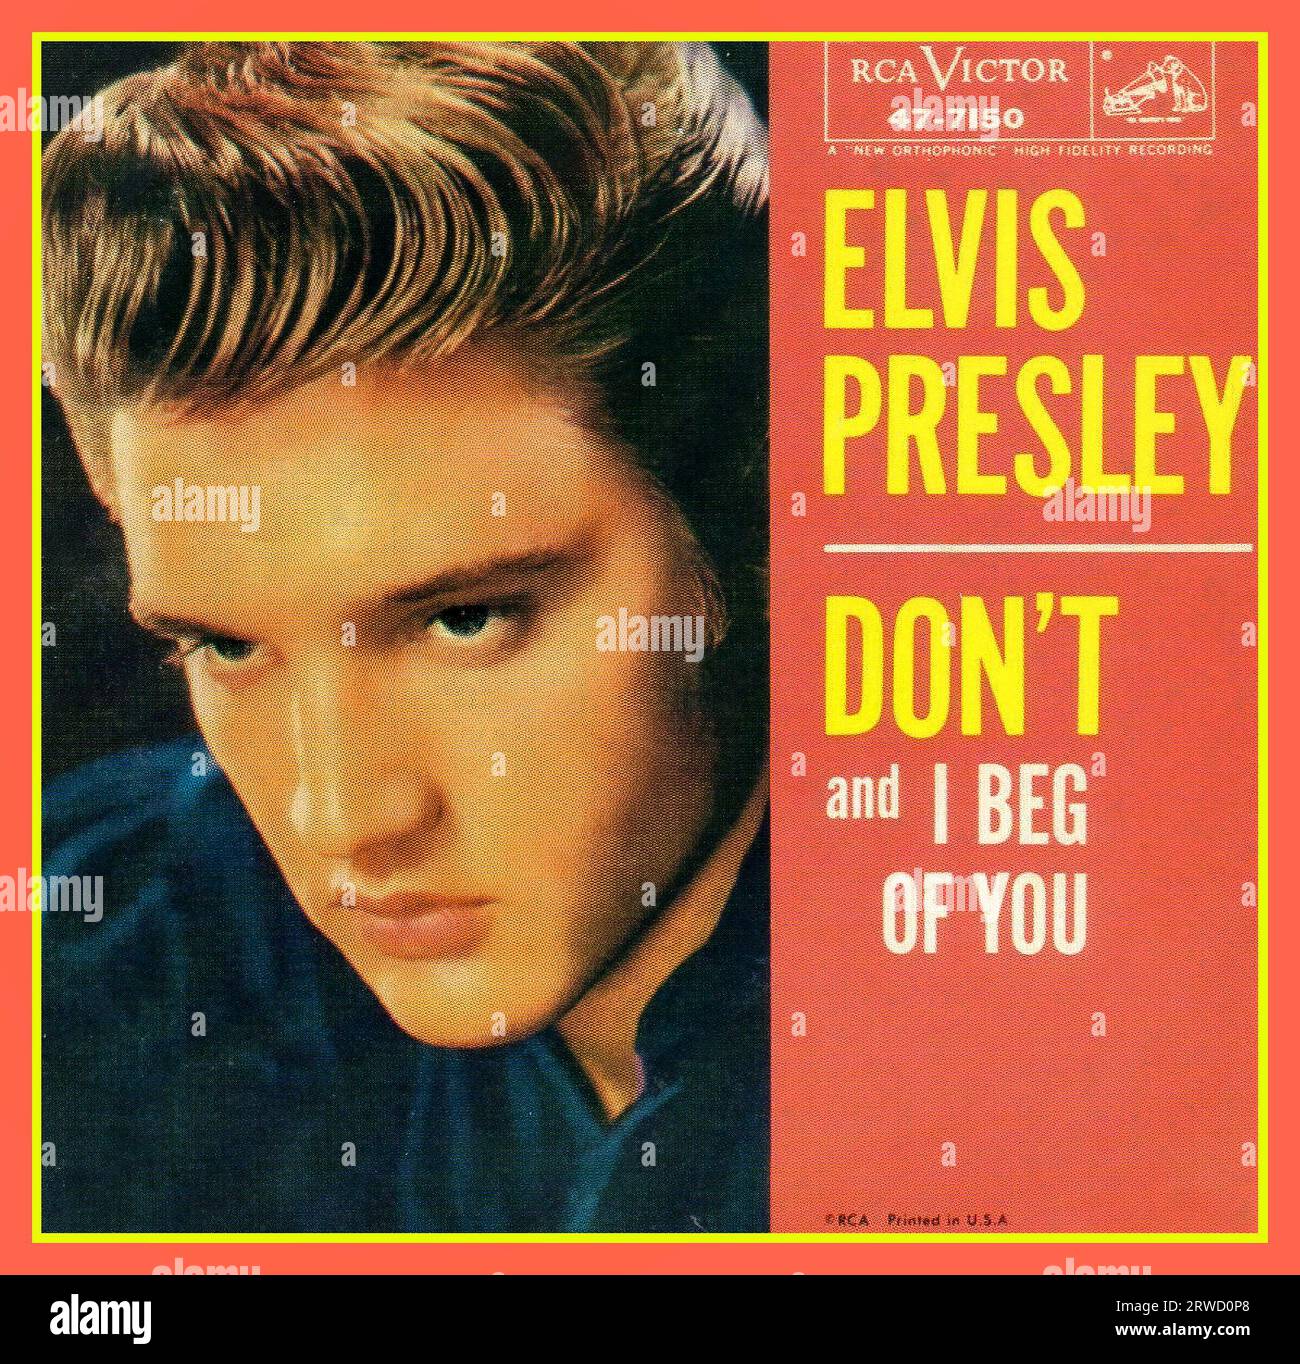 Vintage Elvis Presley Plattencover 'DON' & I Beg of You' RCA Victor High Fidelity Recording 'Don't' ist ein Lied, das von Elvis Presley aufgenommen und 1958 veröffentlicht wurde. Geschrieben und produziert von Jerry Leiber und Mike Stoller, war es Presleys elfter Nummer-eins-Hit in den Vereinigten Staaten. „Don't“ erreichte auch Platz vier der R&B-Charts. Billboard stufte die Ballade als den Song Nr. 3 für 1958 ein. Stockfoto